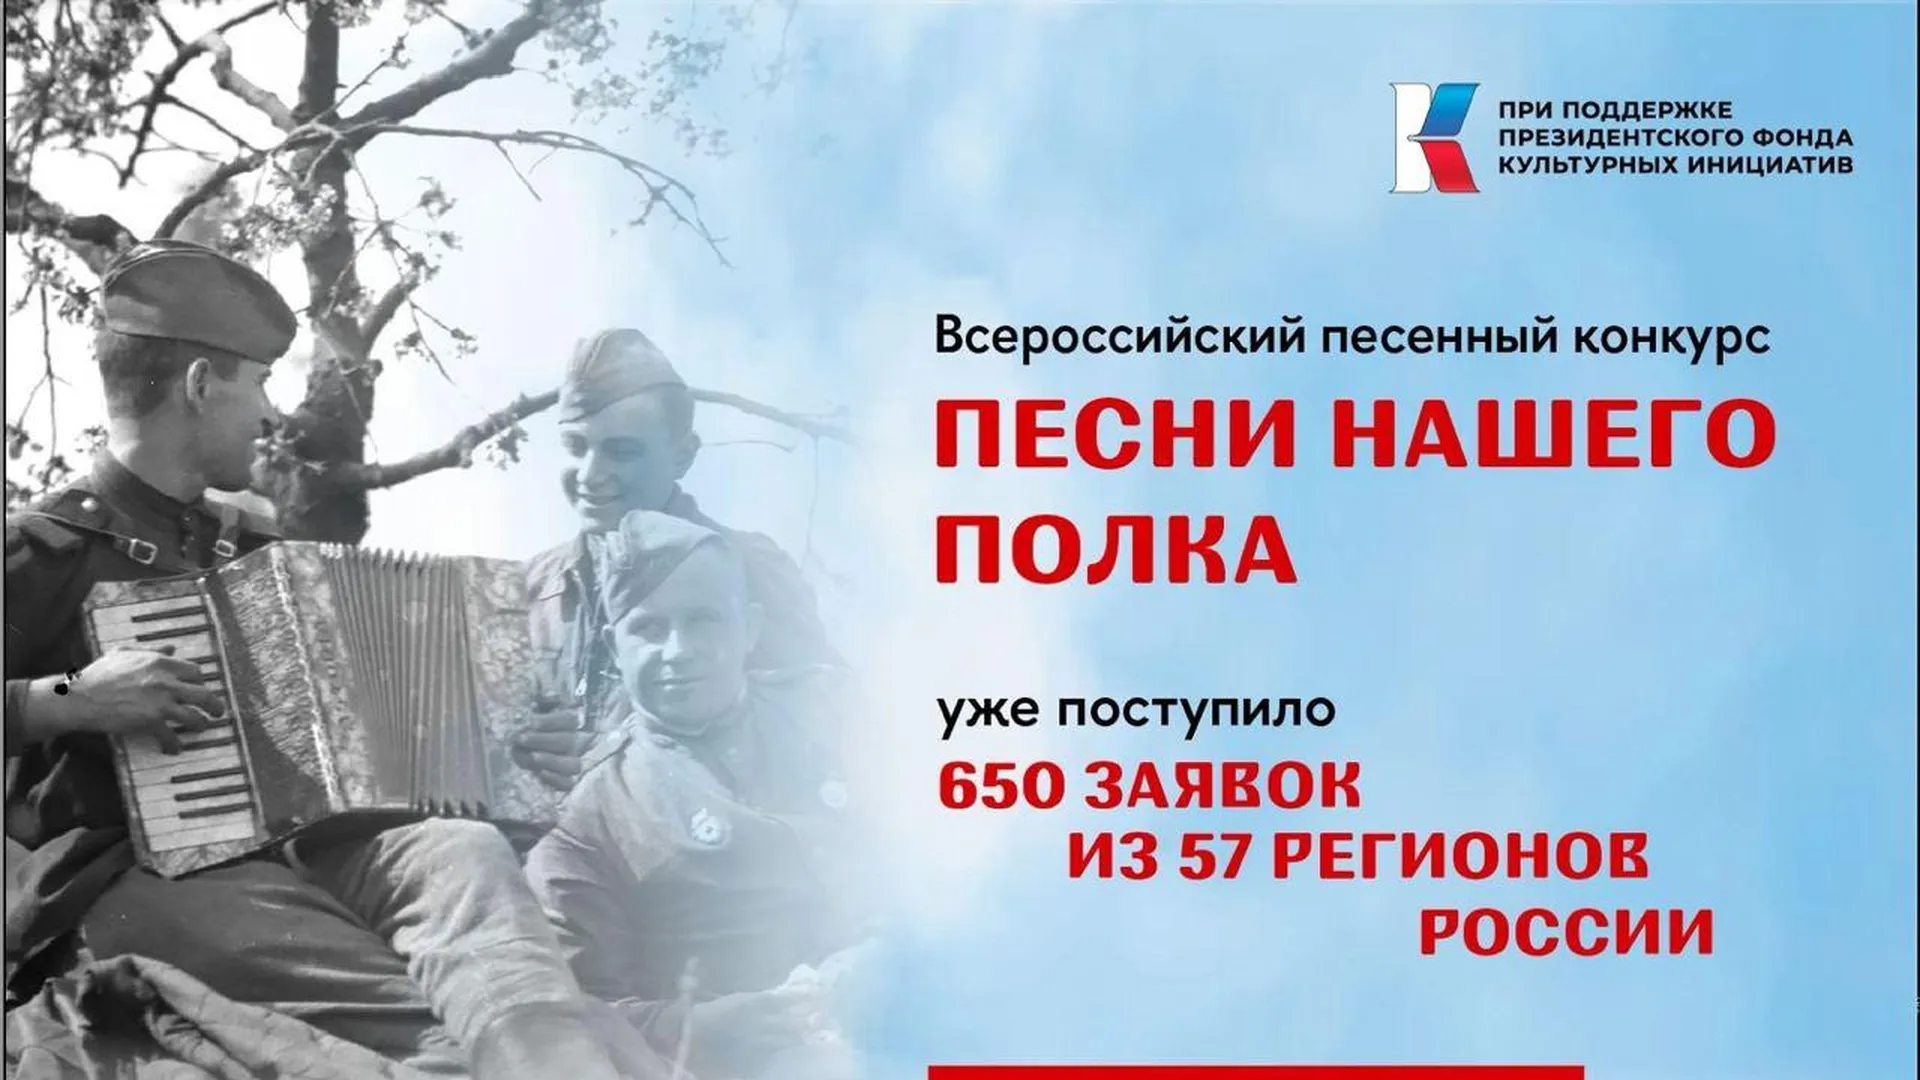 Жители Подмосковья могут поучаствовать в акции «Песни нашего полка»